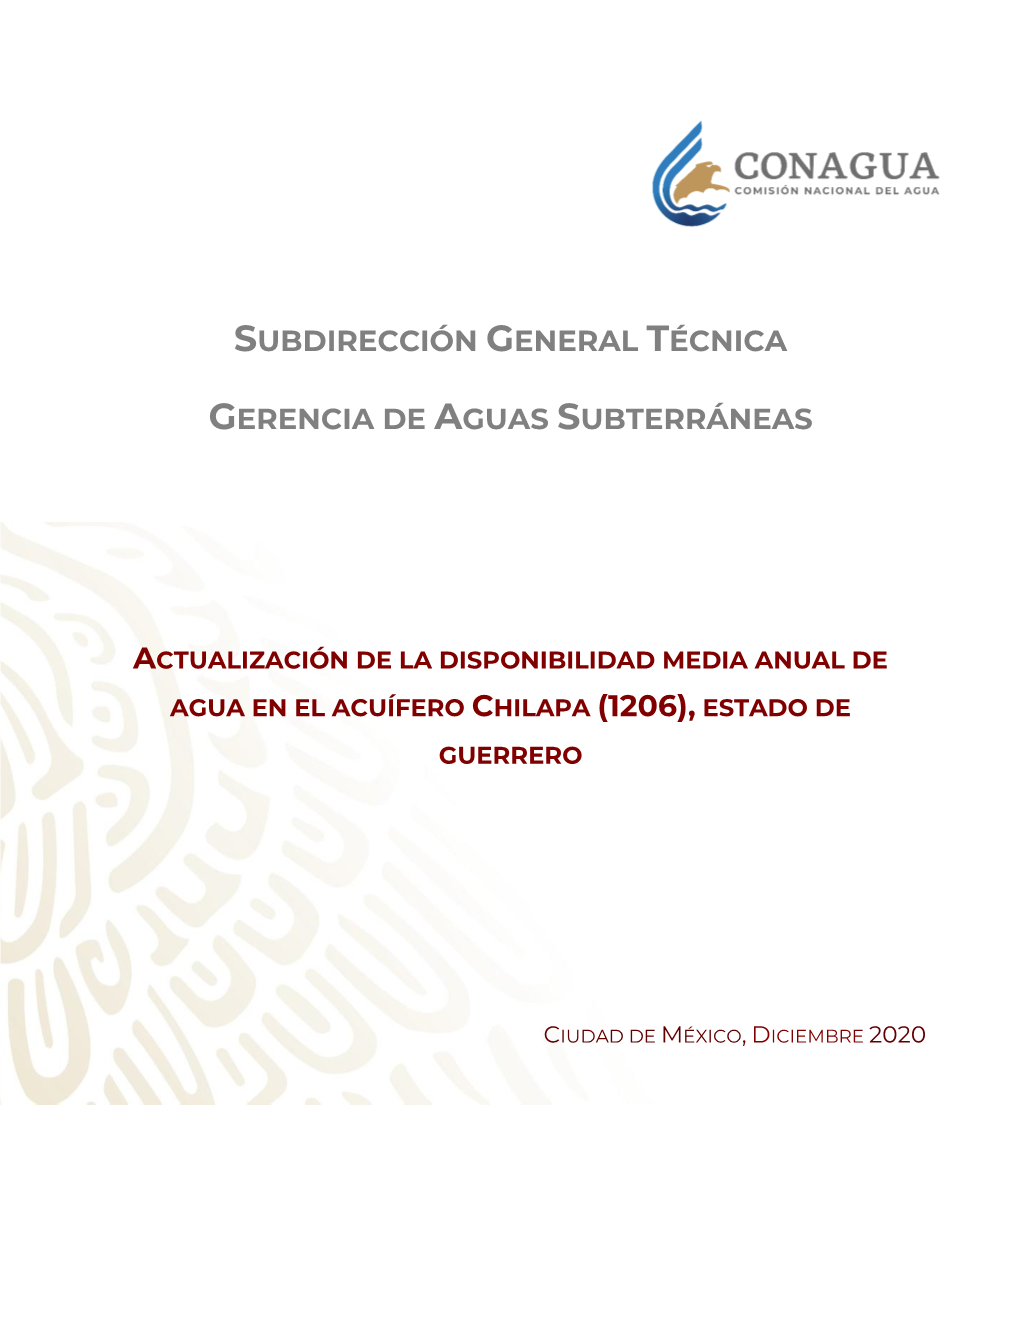 Actualización De La Disponibilidad Media Anual De Agua En El Acuífero Chilapa (1206), Estado De Guerrero